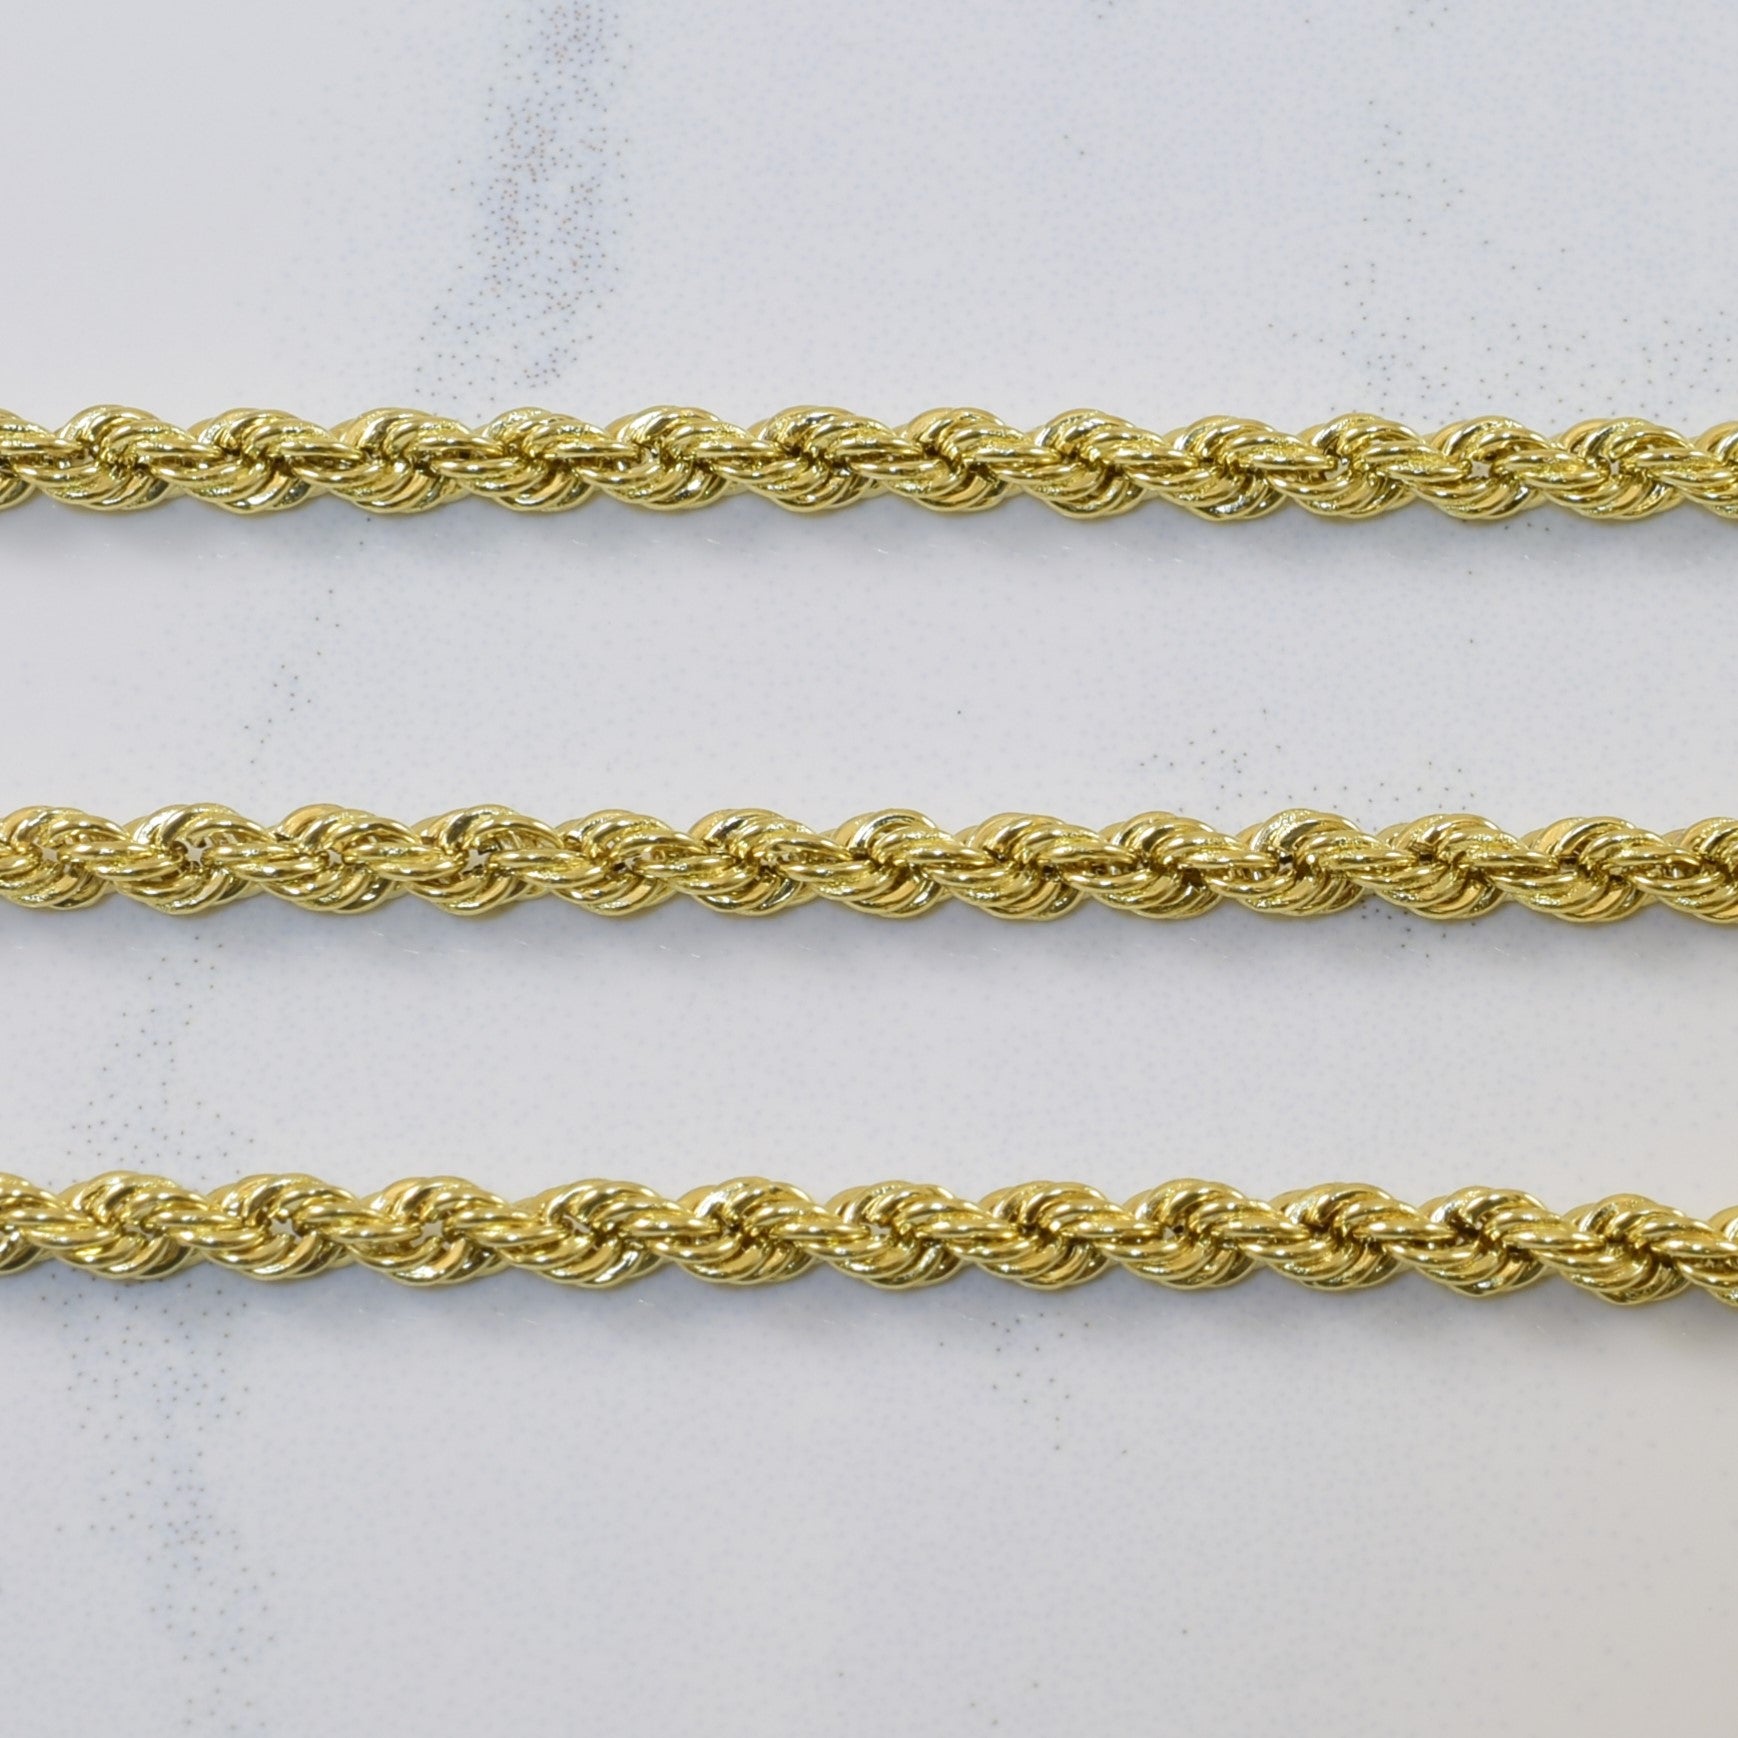 10k Yellow Gold Rope Chain | 19